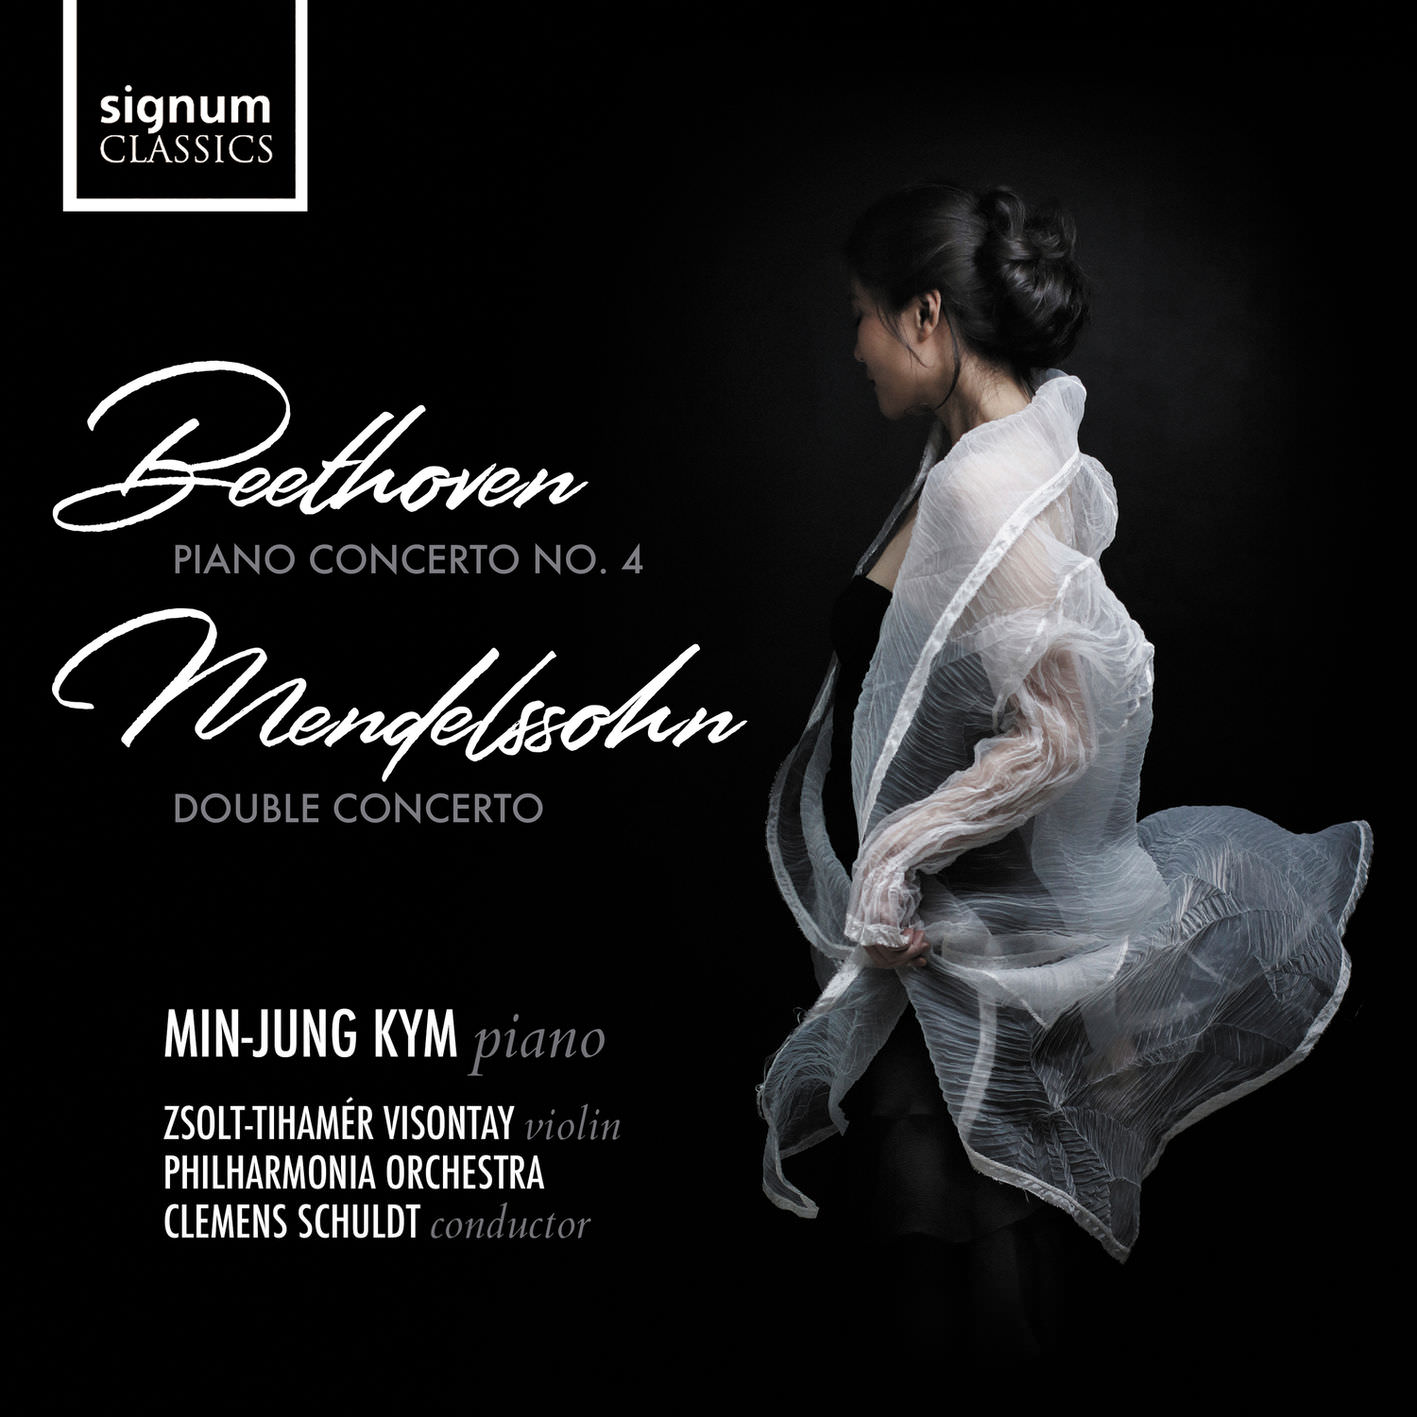 Min-Jung Kym - Beethoven: Piano Concerto No. 4 & Mendelssohn: Double Concerto (2018) [FLAC 24bit/192kHz]